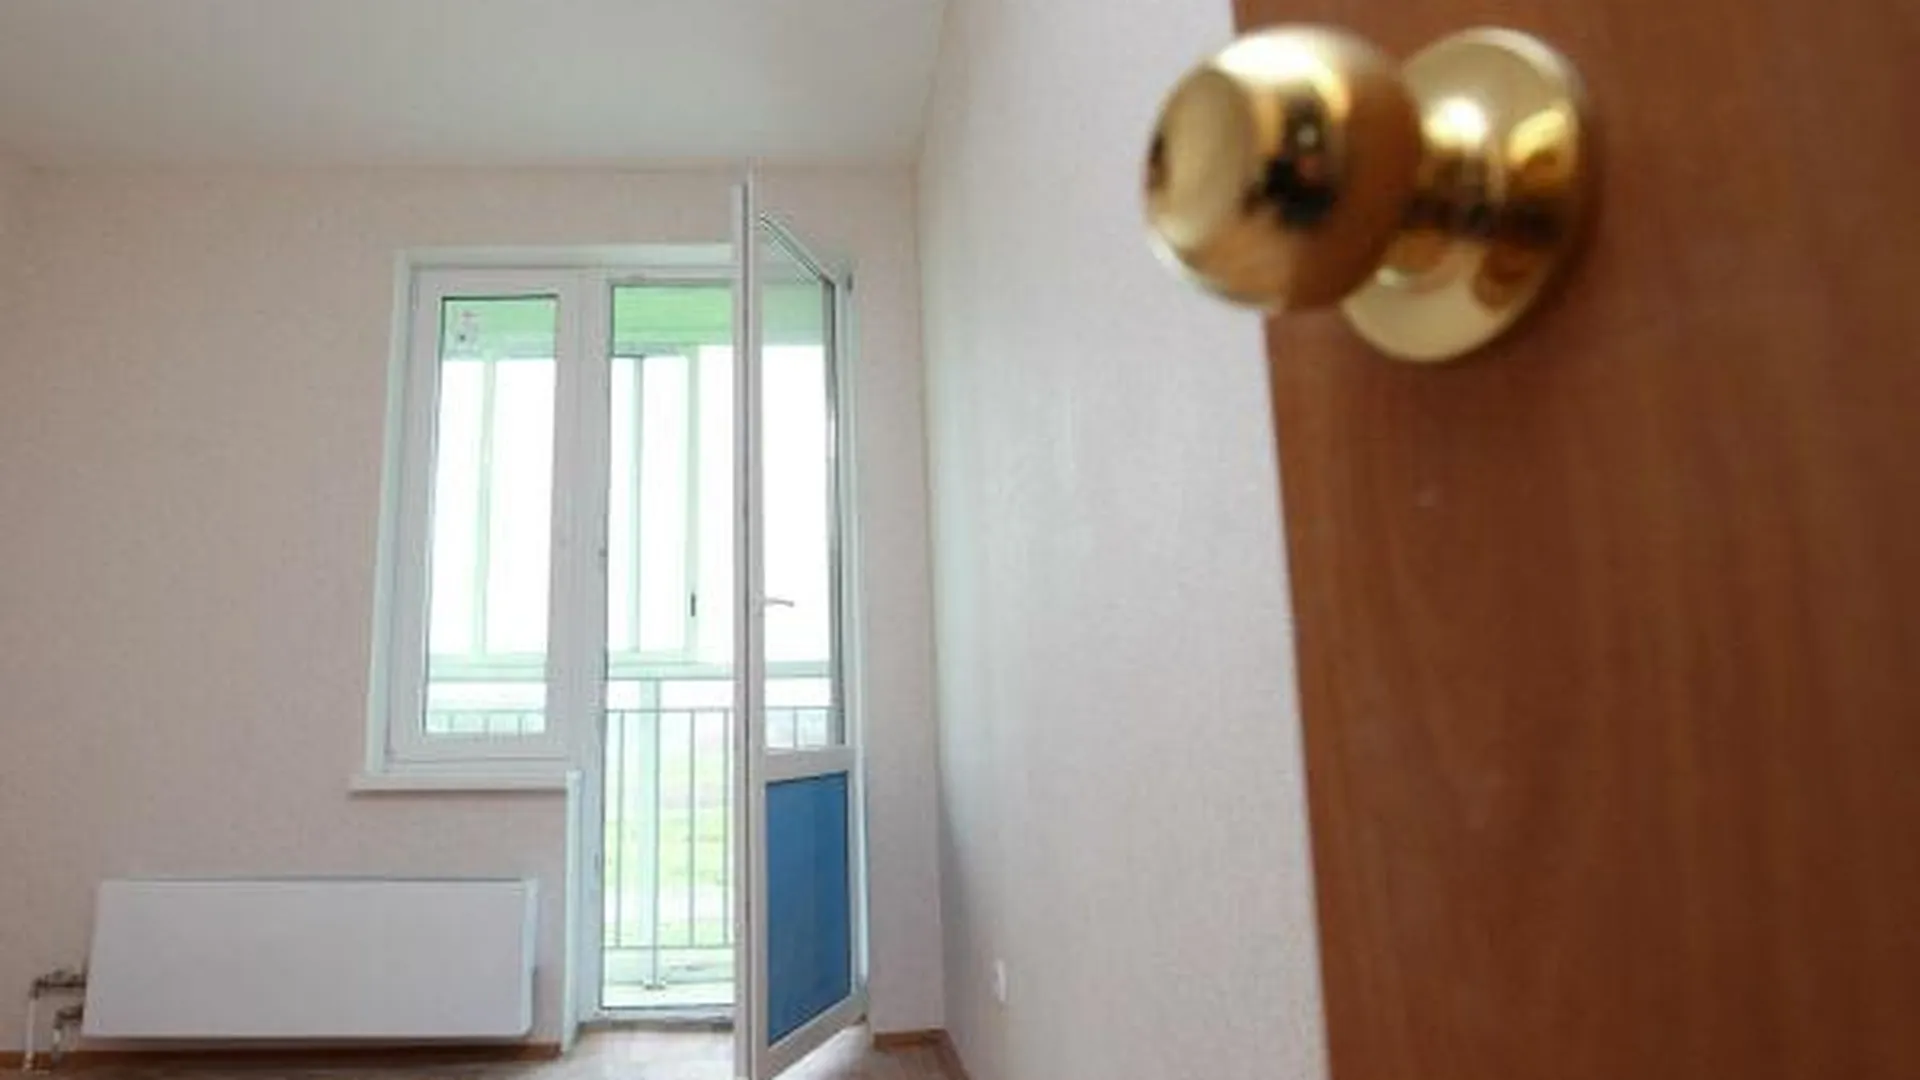 Десять семей из Красноармейска получили новые квартиры